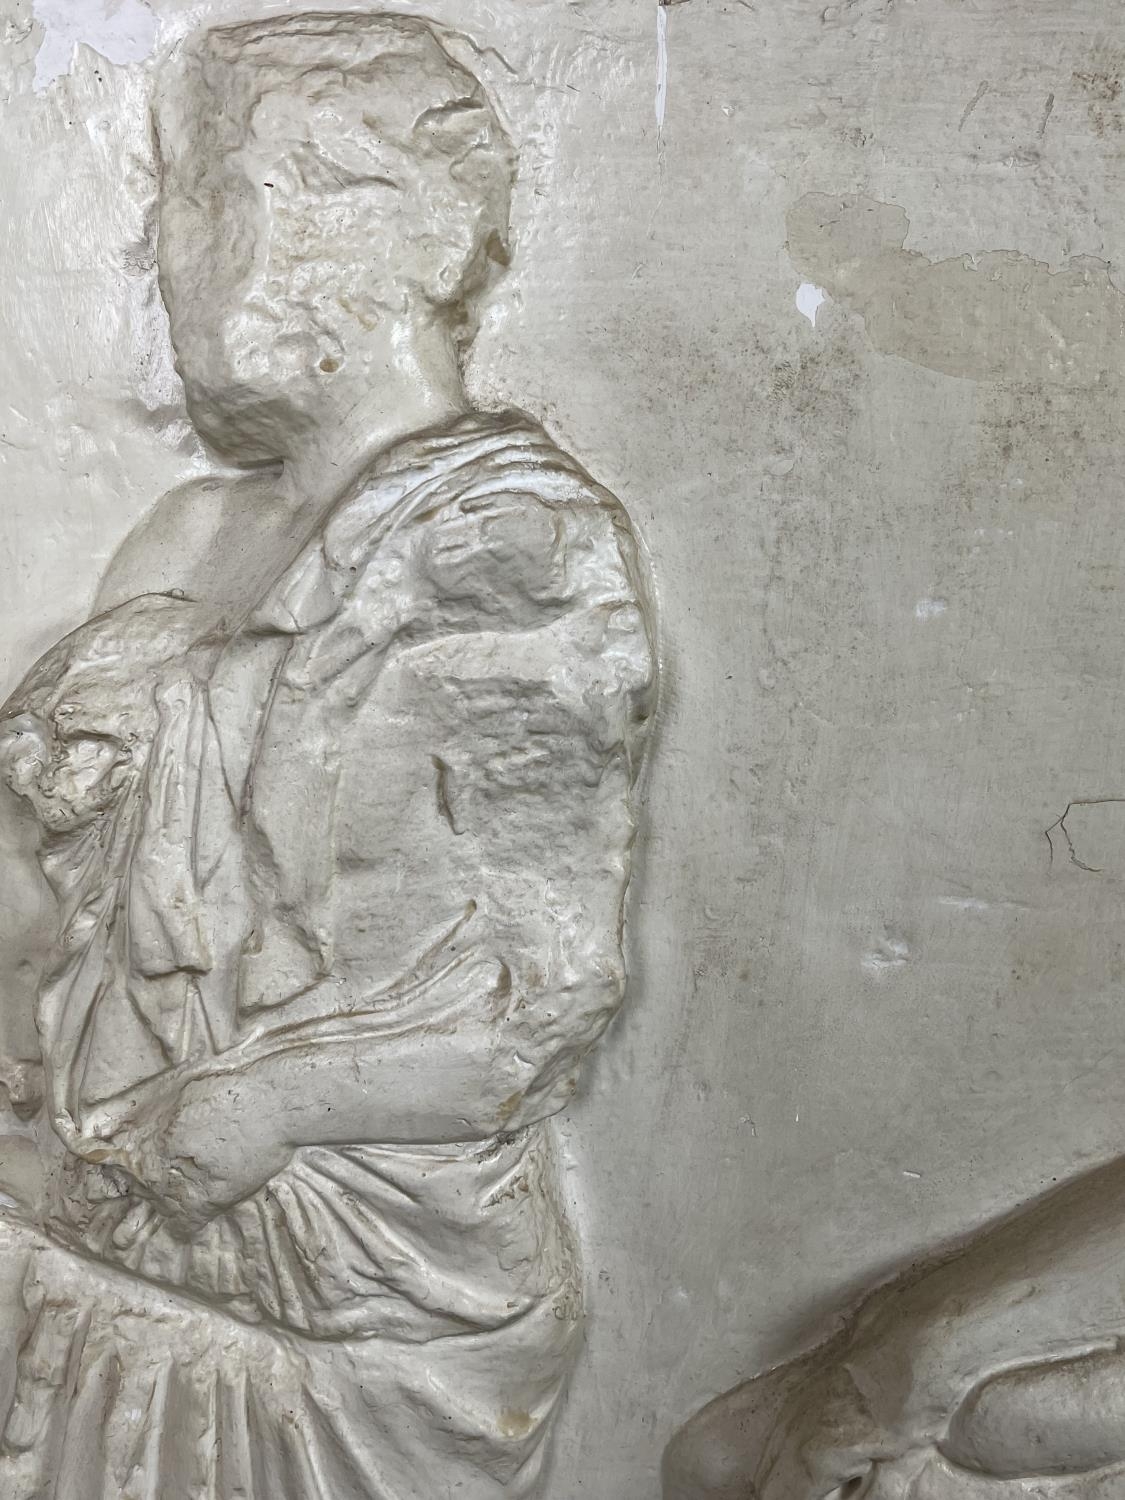 ELGIN MARBLES SCULPTURE PLASTER RELIEF, after the original Parthenon frieze, 146cm x 100cm H. - Image 5 of 6